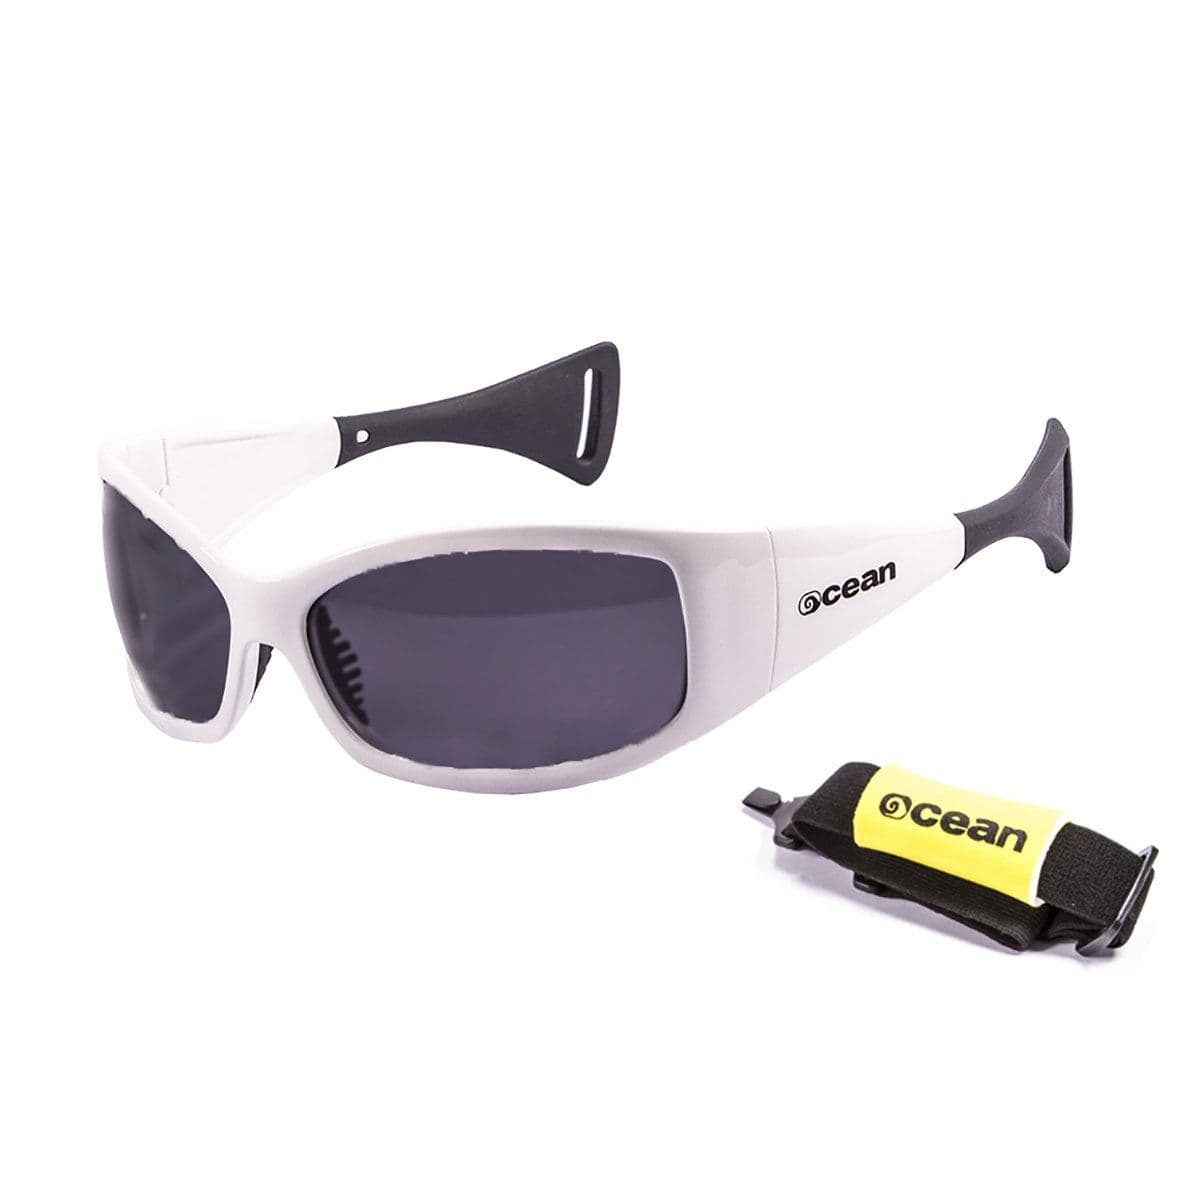 Ocean Mentaway Water Sport Sunglasses